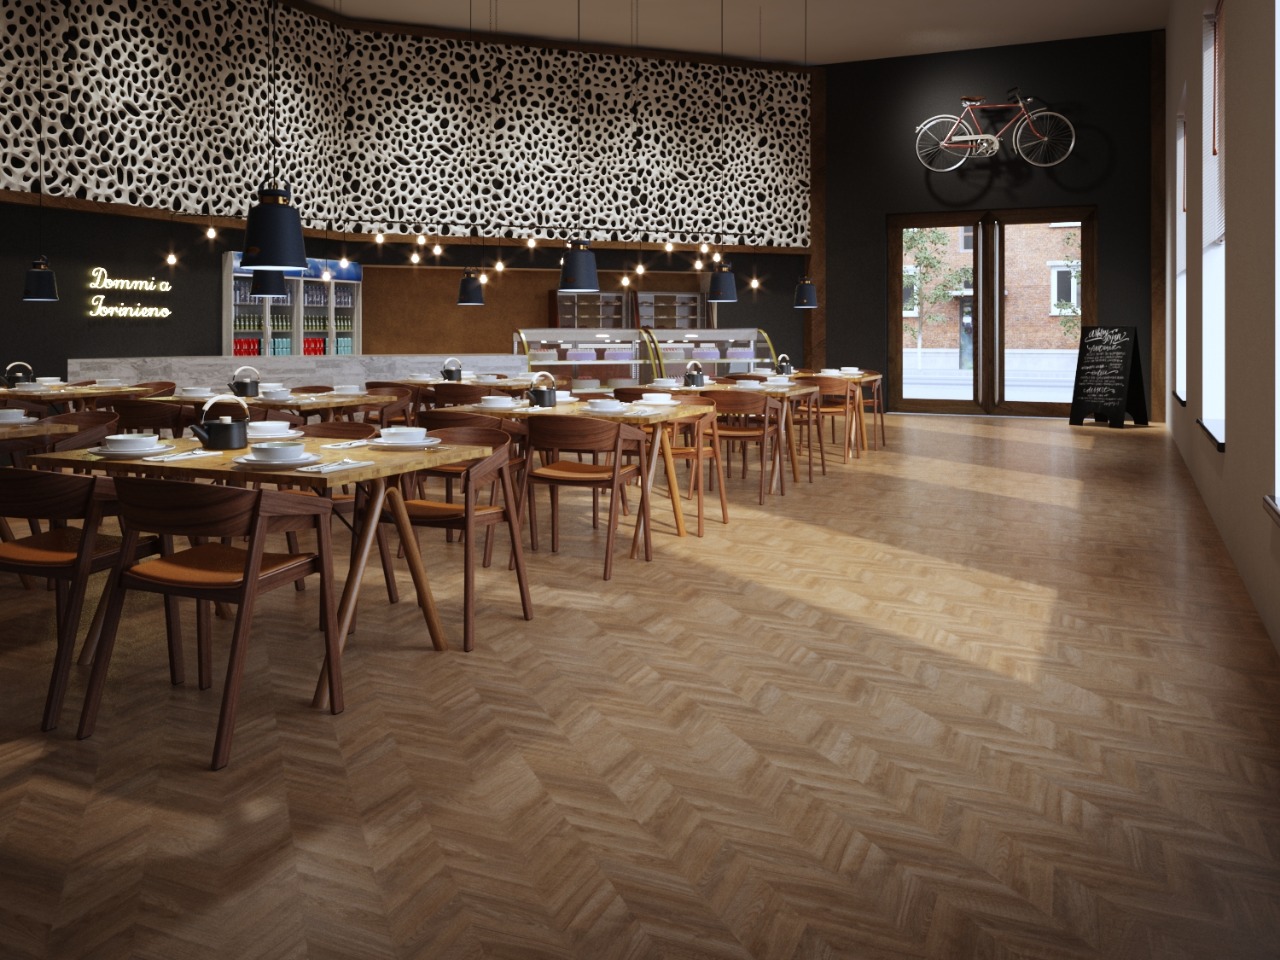 CGI Restaurant_Cafeteria